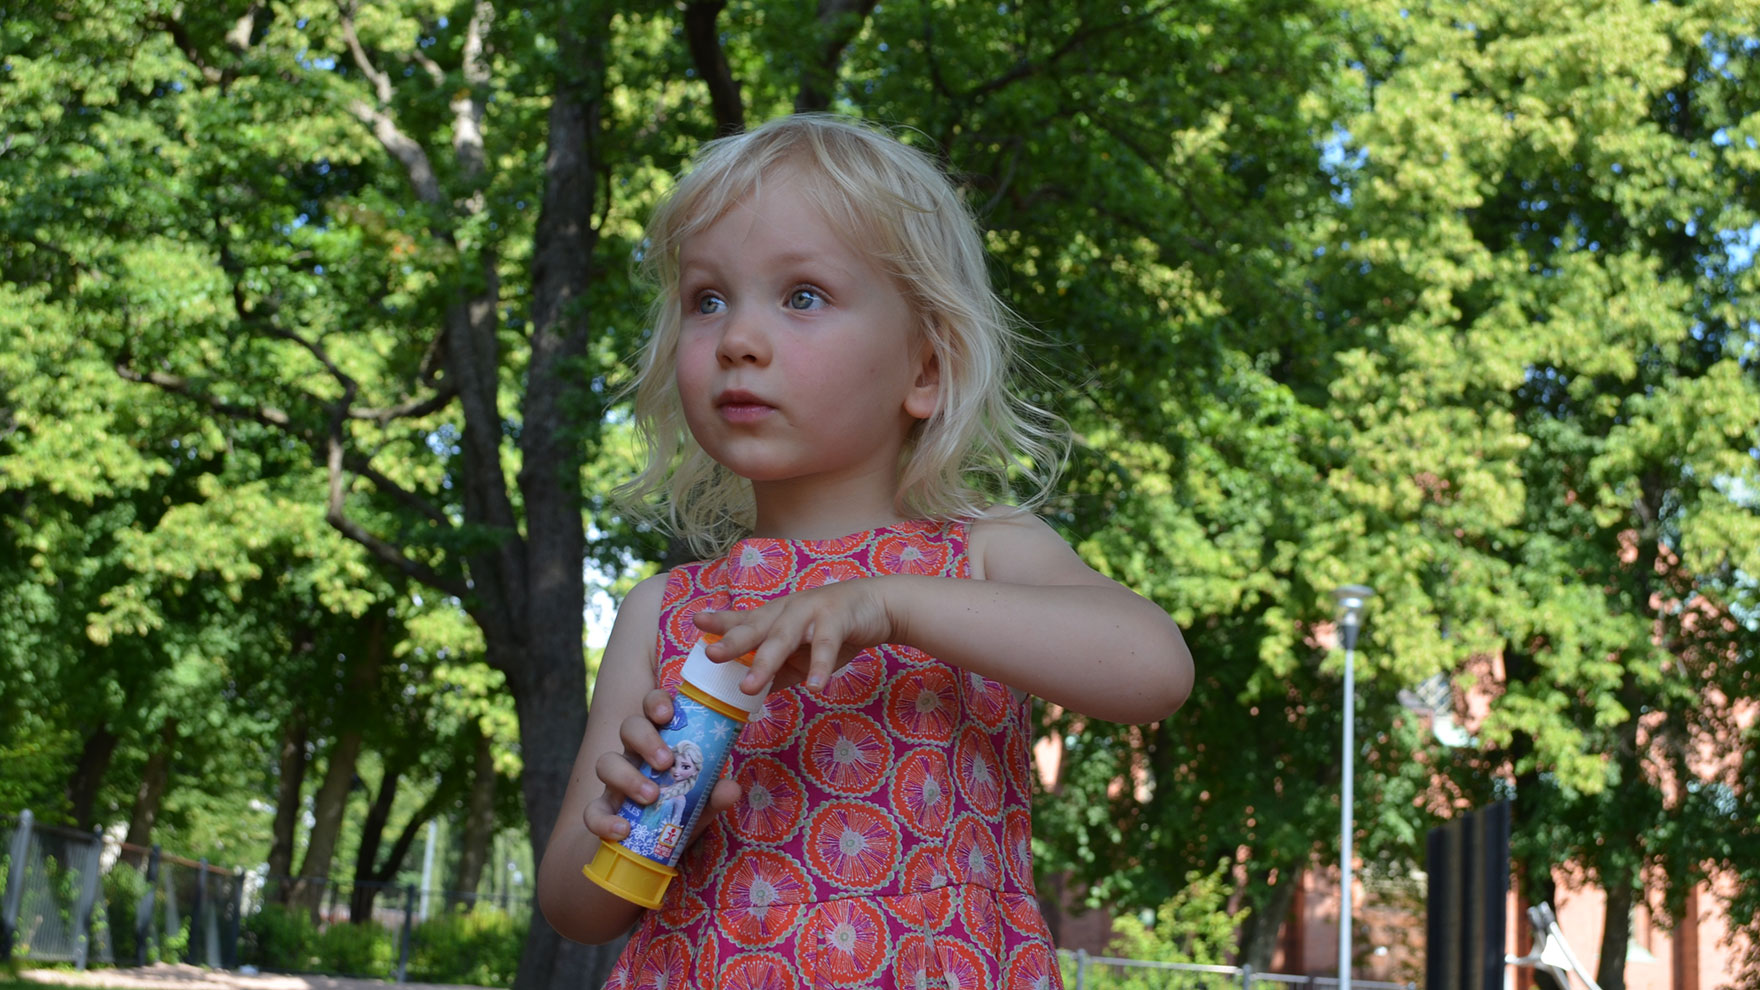 Tyttö seisoo puistossa ja hänellä on käsissään saippuakuplapurkki.